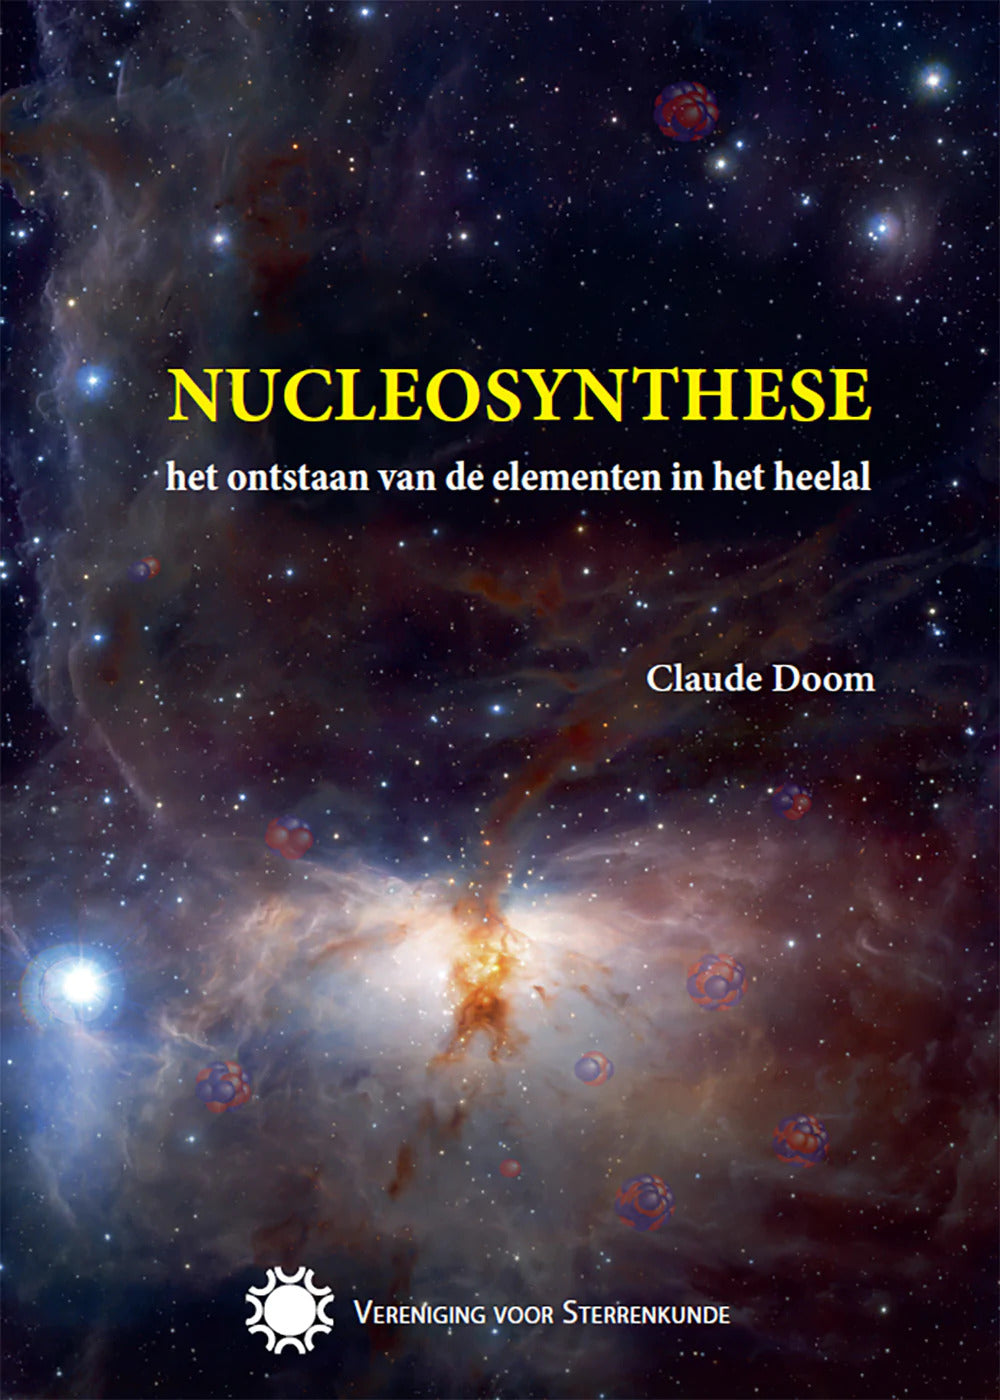 Nucleosynthese: het ontstaan van de elementen in het heelal